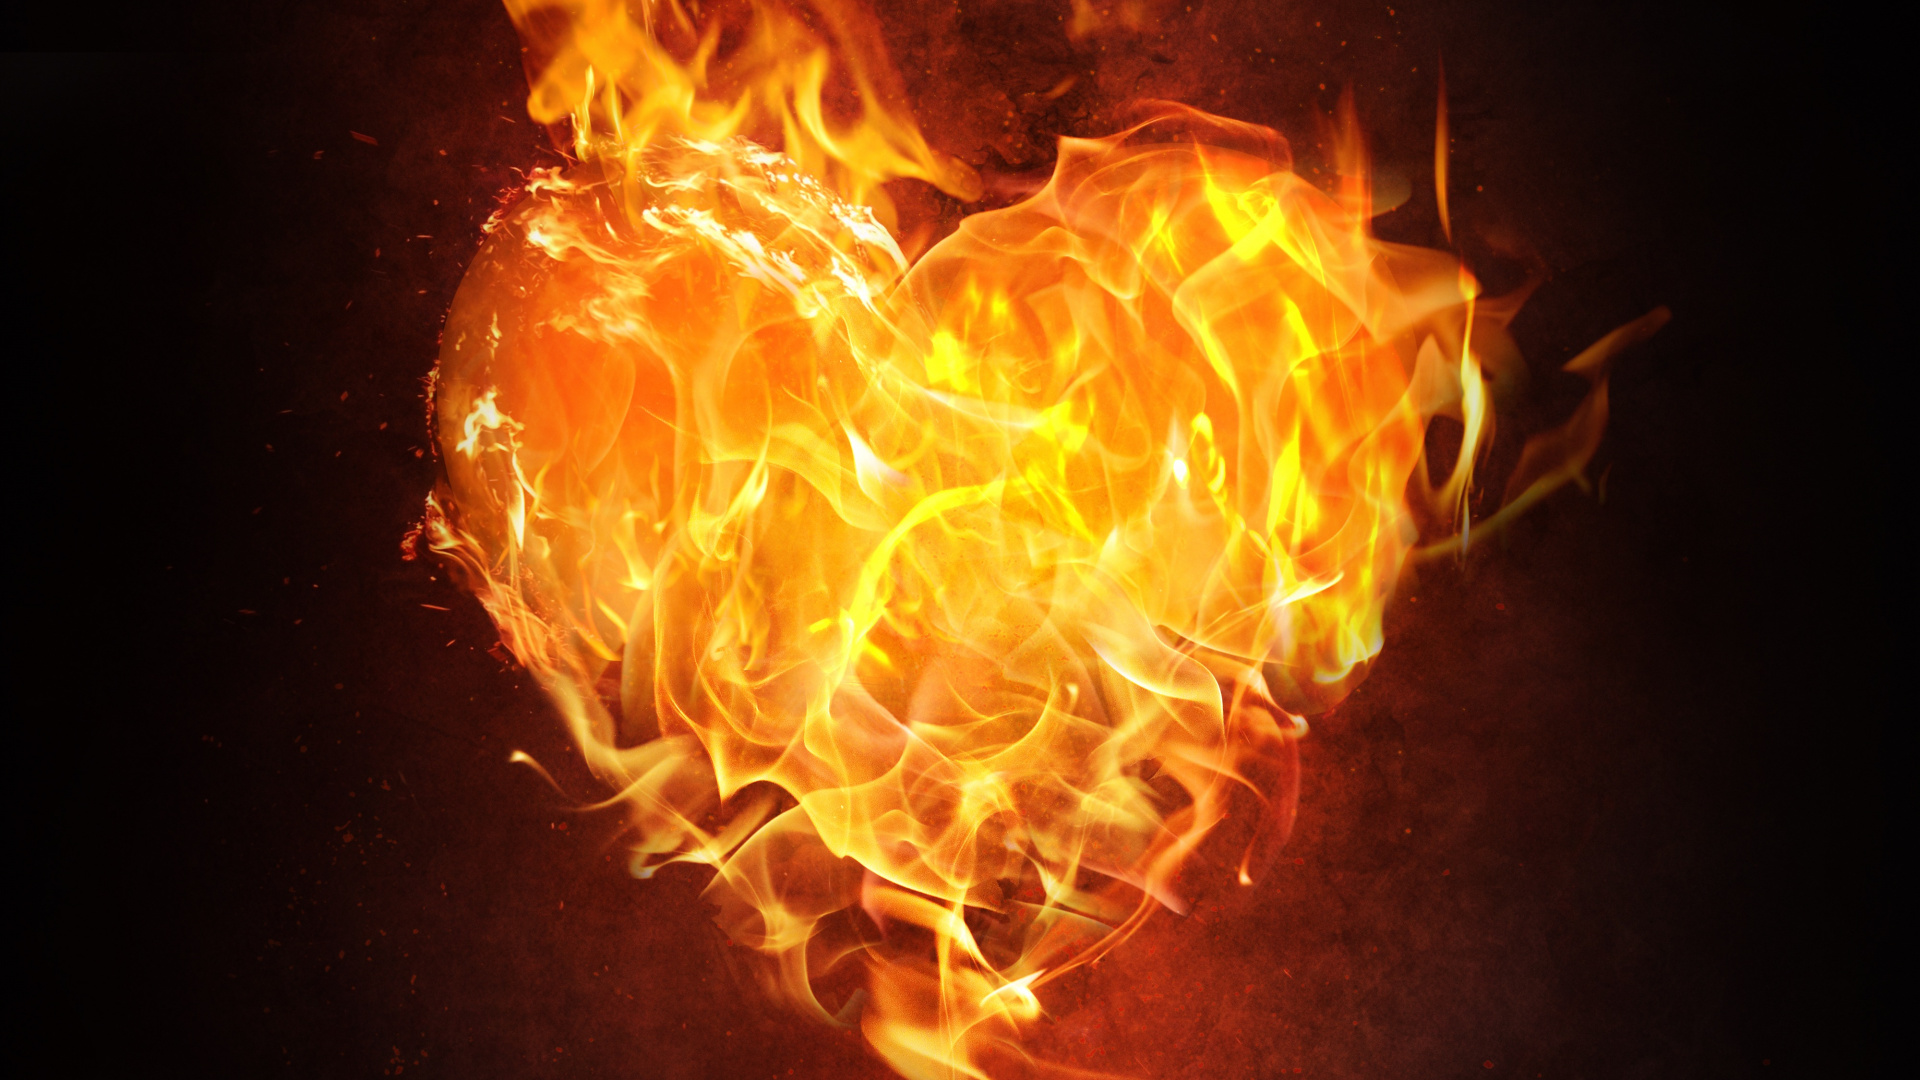 Flame, Fire, Heart, Heat, Orange. Wallpaper in 1920x1080 Resolution